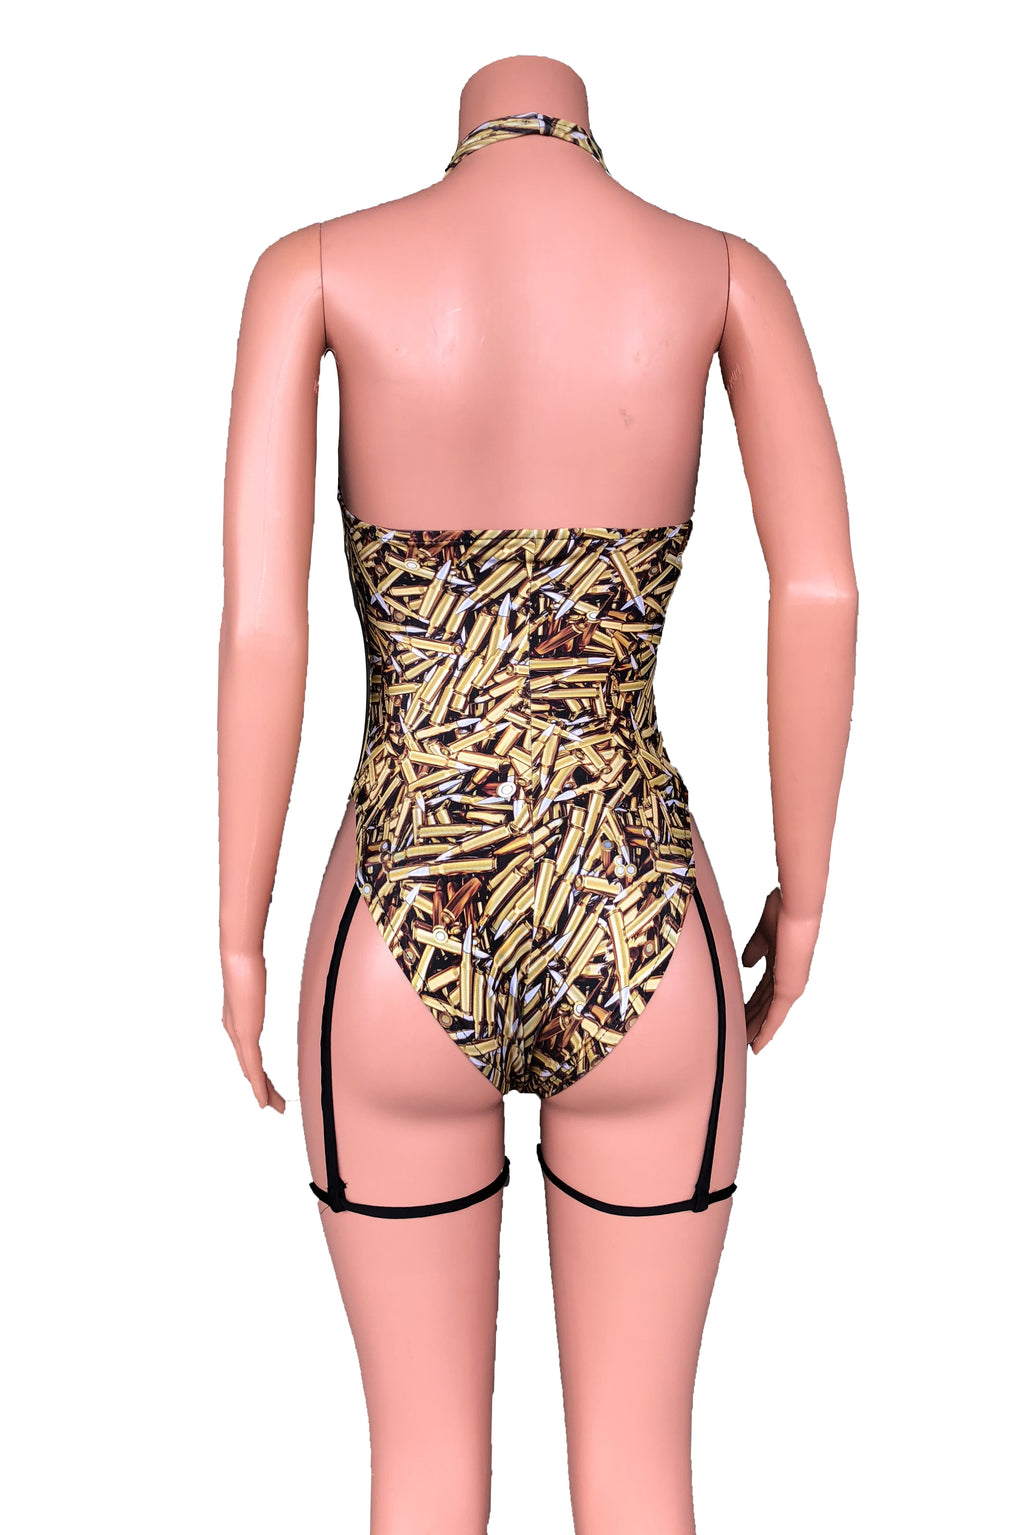 AK-47 high cut garter swimsuit XS